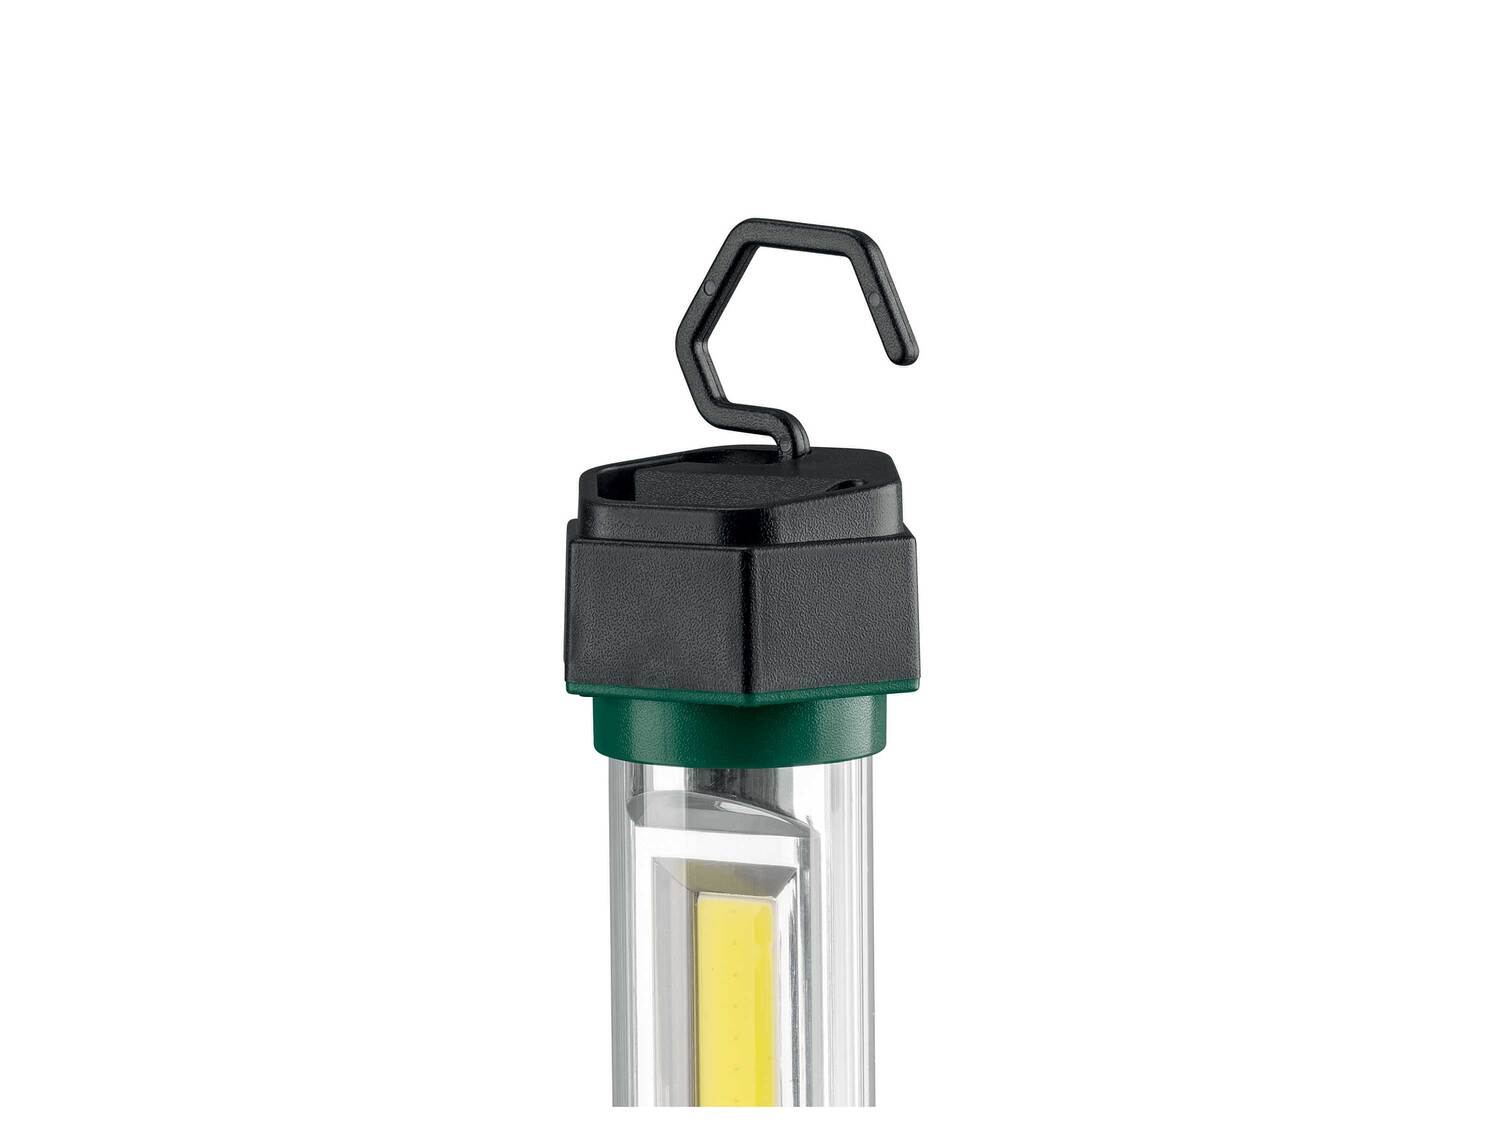 Lampe torche LED SANS FIL , le prix 12.99 € 
- Au choix :
- 1 LED COB puissante ...